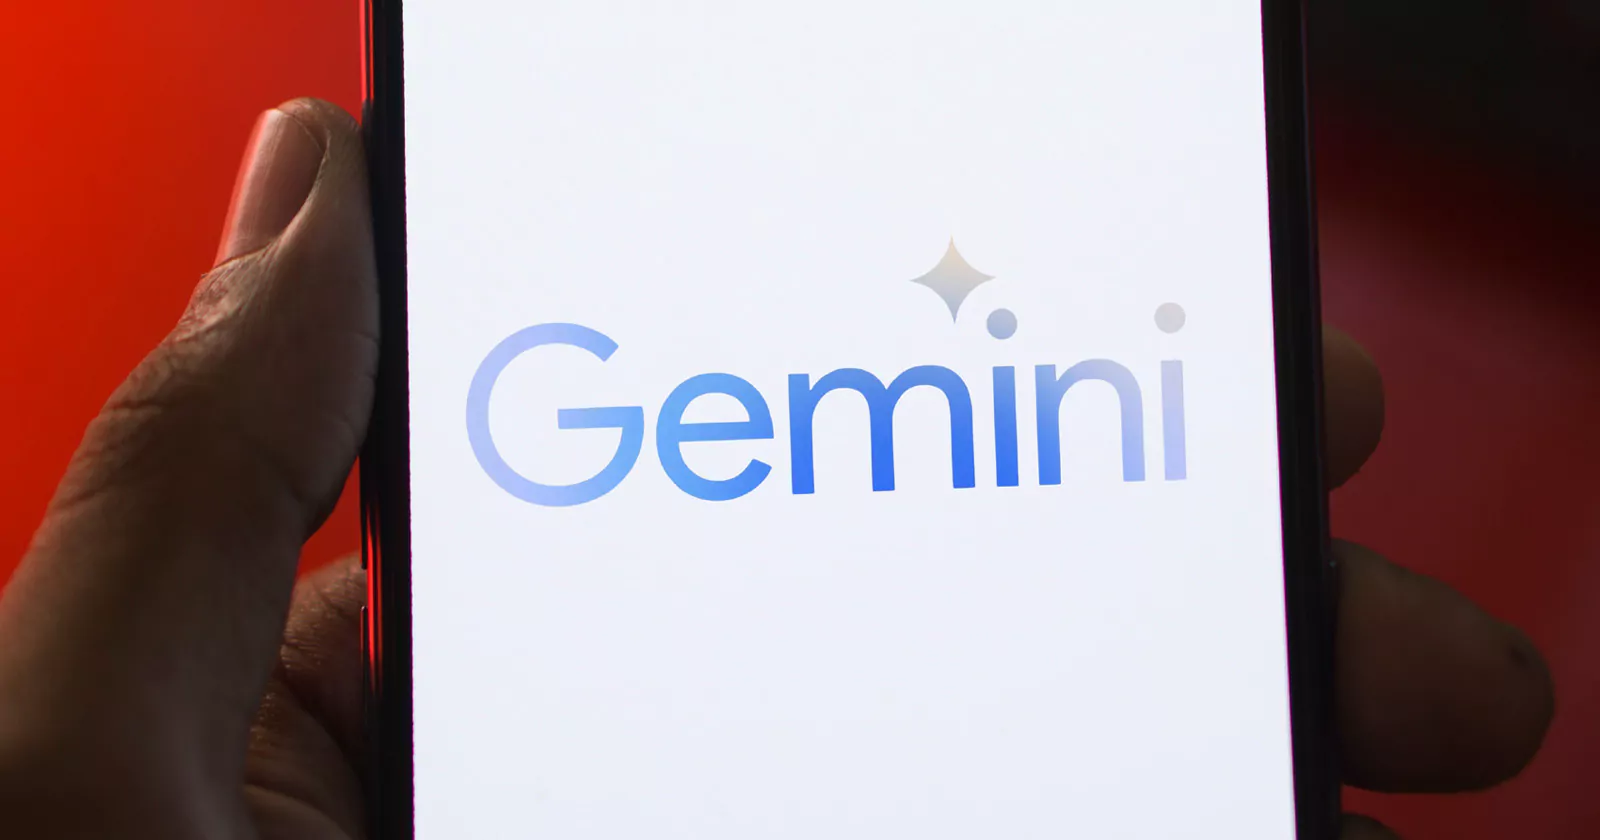 Filtrado: Disponibilidad de Google Gemini en la búsqueda de Android